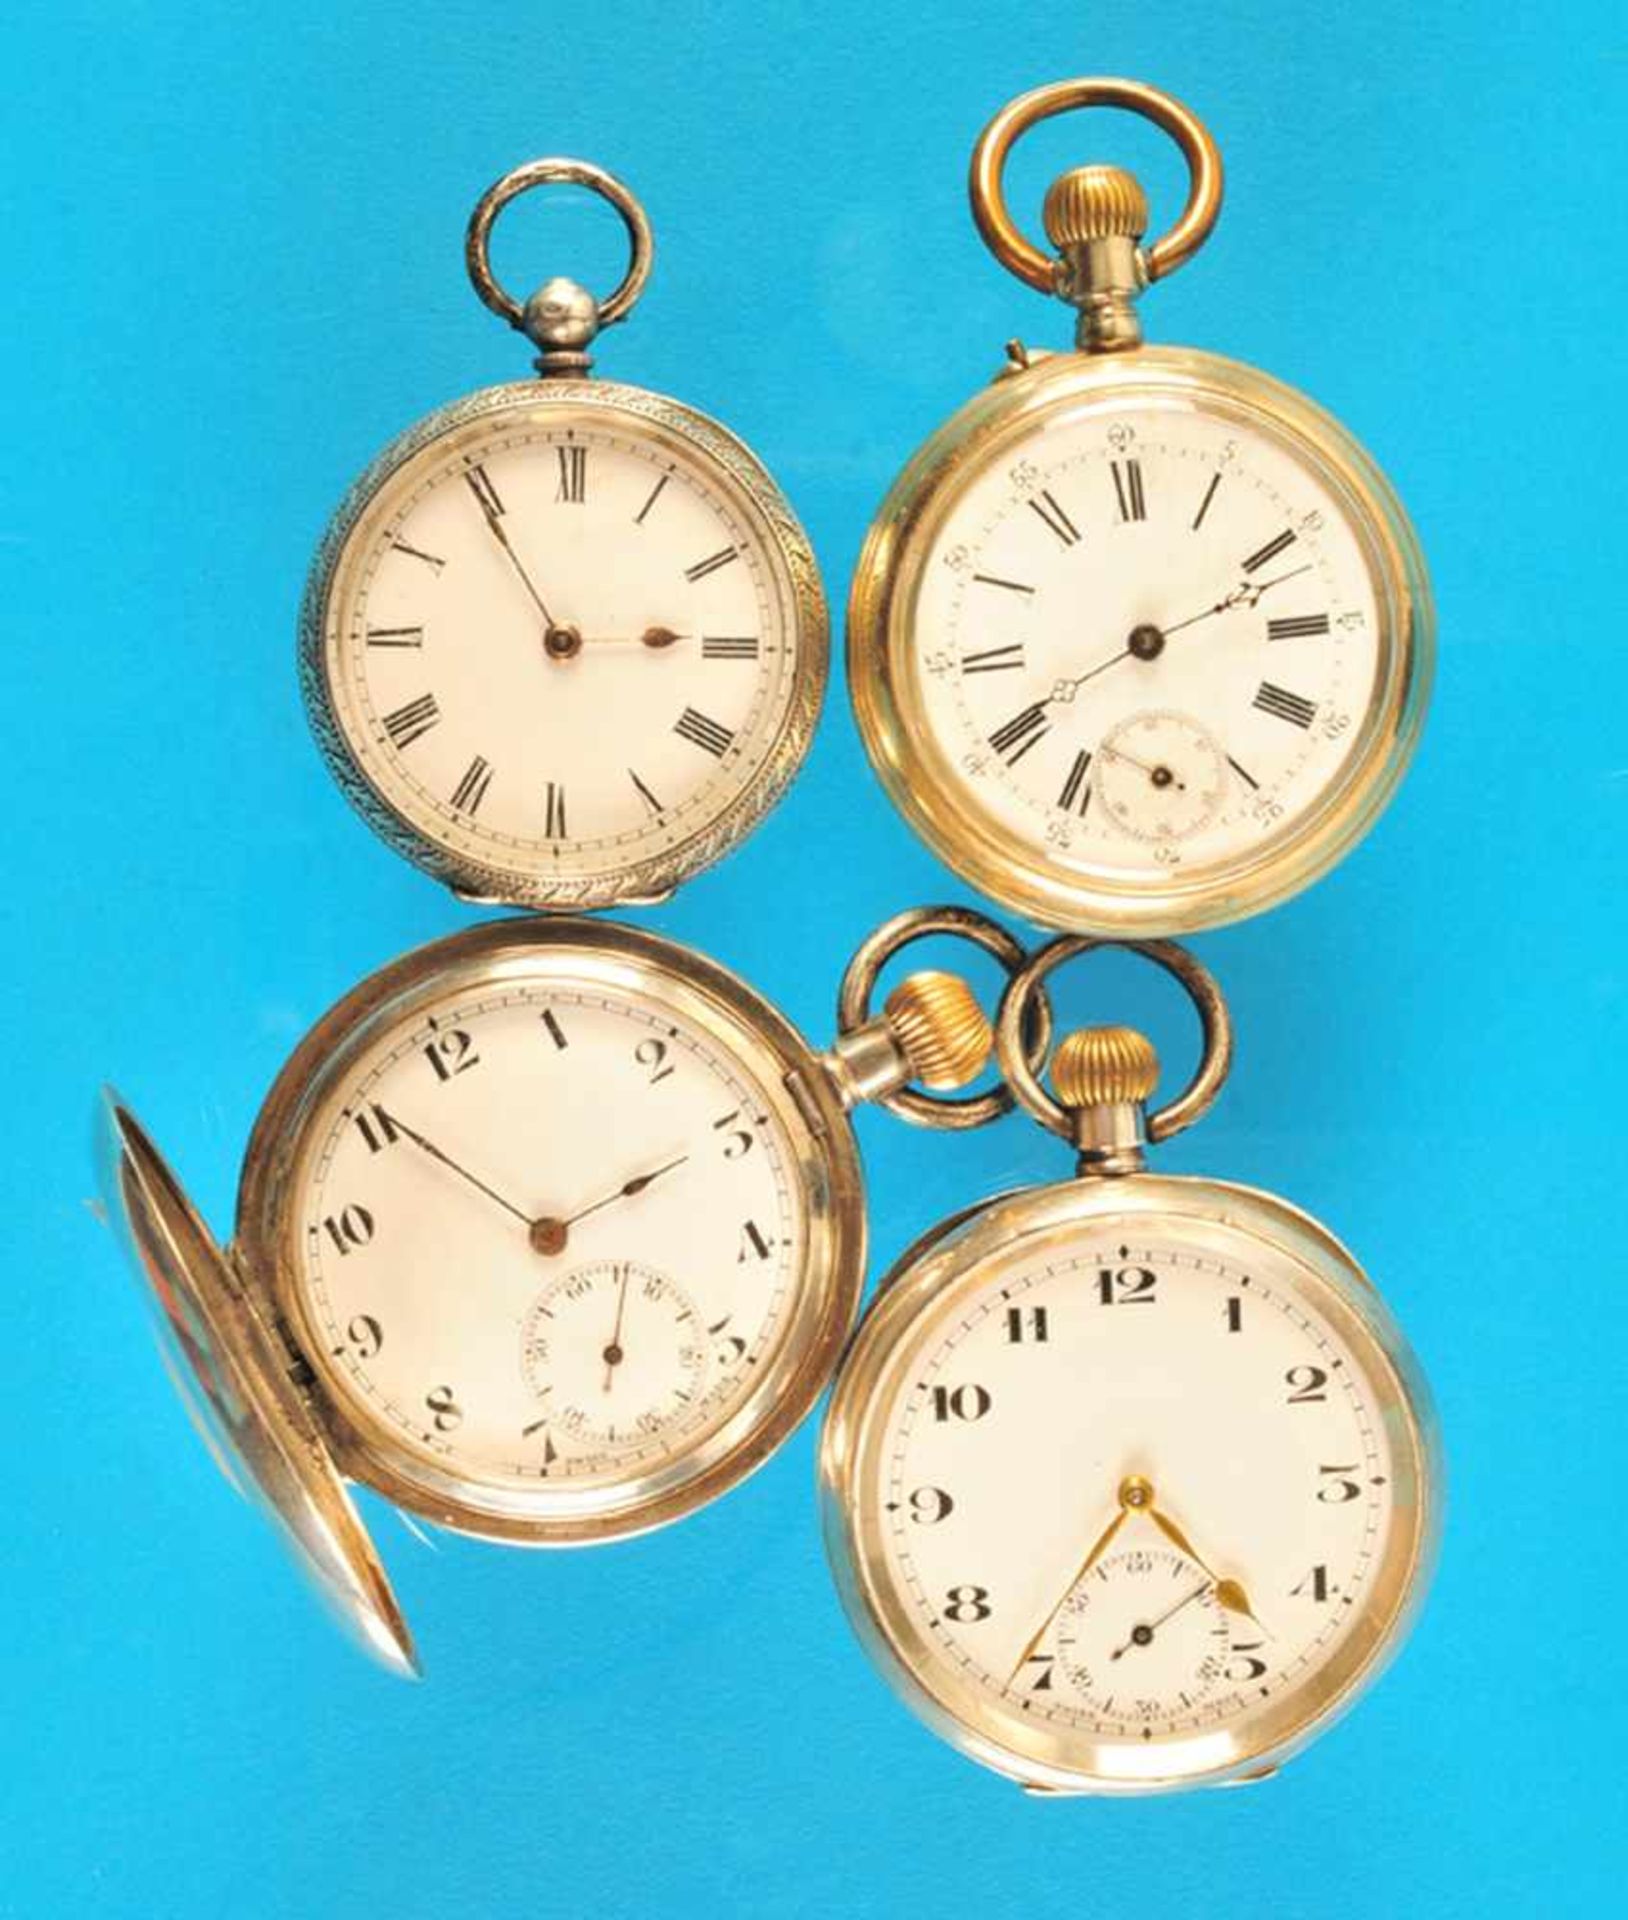 Bundle with 4 pocket watchesKonvolut mit 4 Taschenuhren: Silbertaschenuhr, floral graviertes